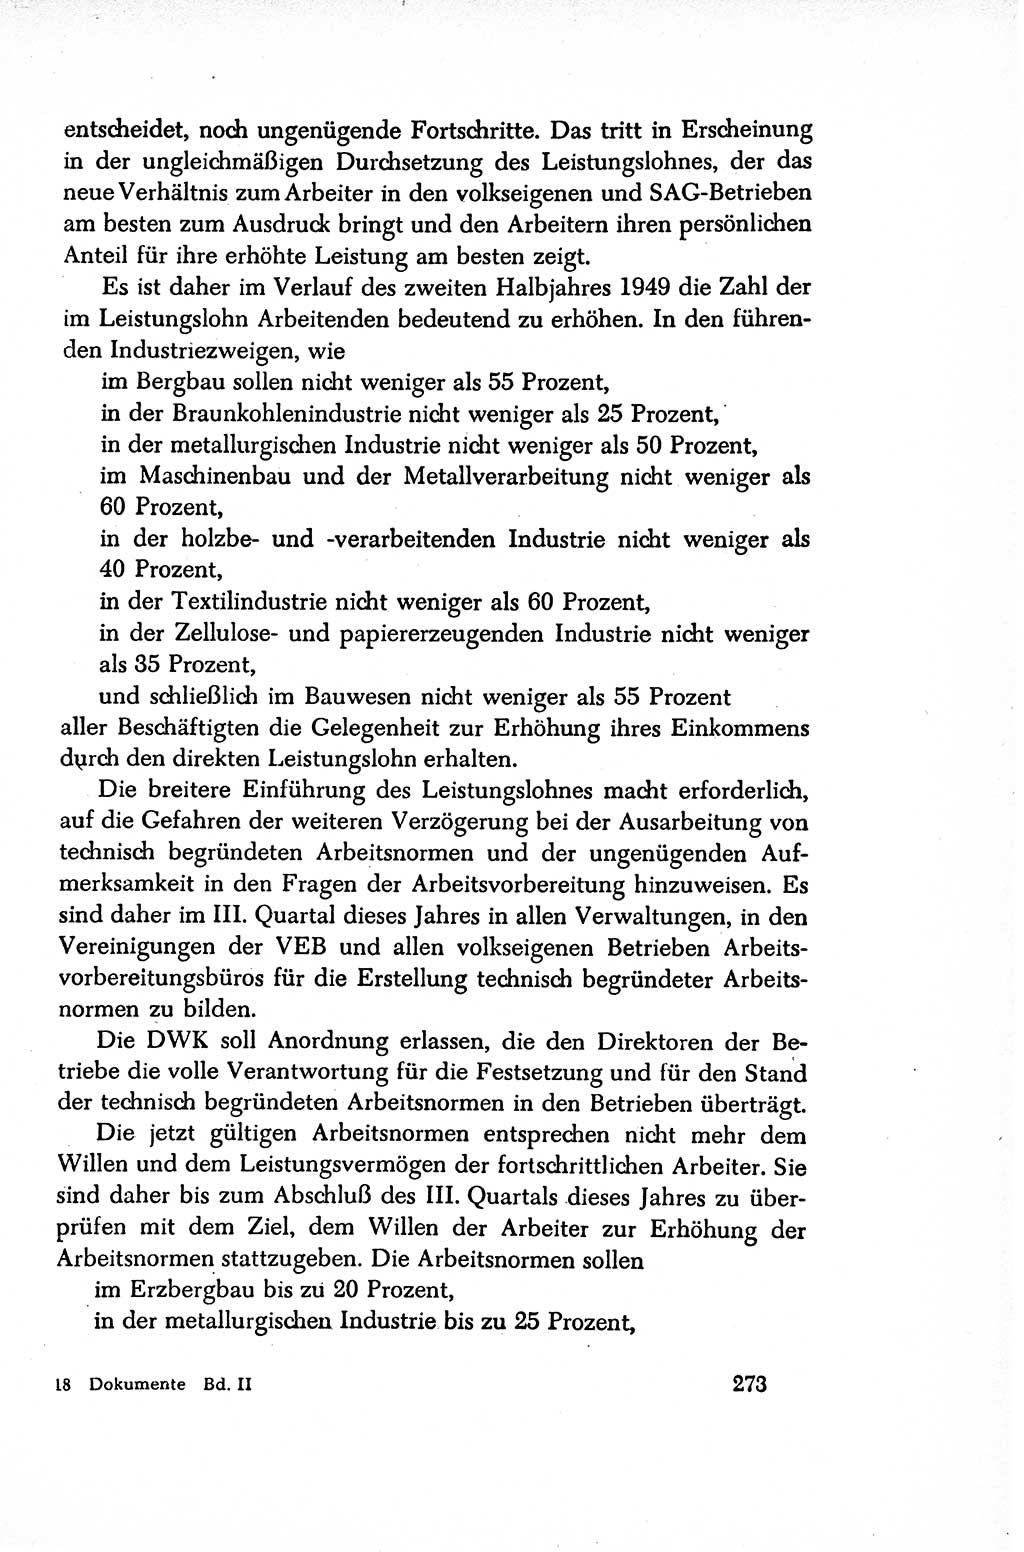 Dokumente der Sozialistischen Einheitspartei Deutschlands (SED) [Sowjetische Besatzungszone (SBZ) Deutschlands/Deutsche Demokratische Republik (DDR)] 1948-1950, Seite 273 (Dok. SED SBZ Dtl. DDR 1948-1950, S. 273)